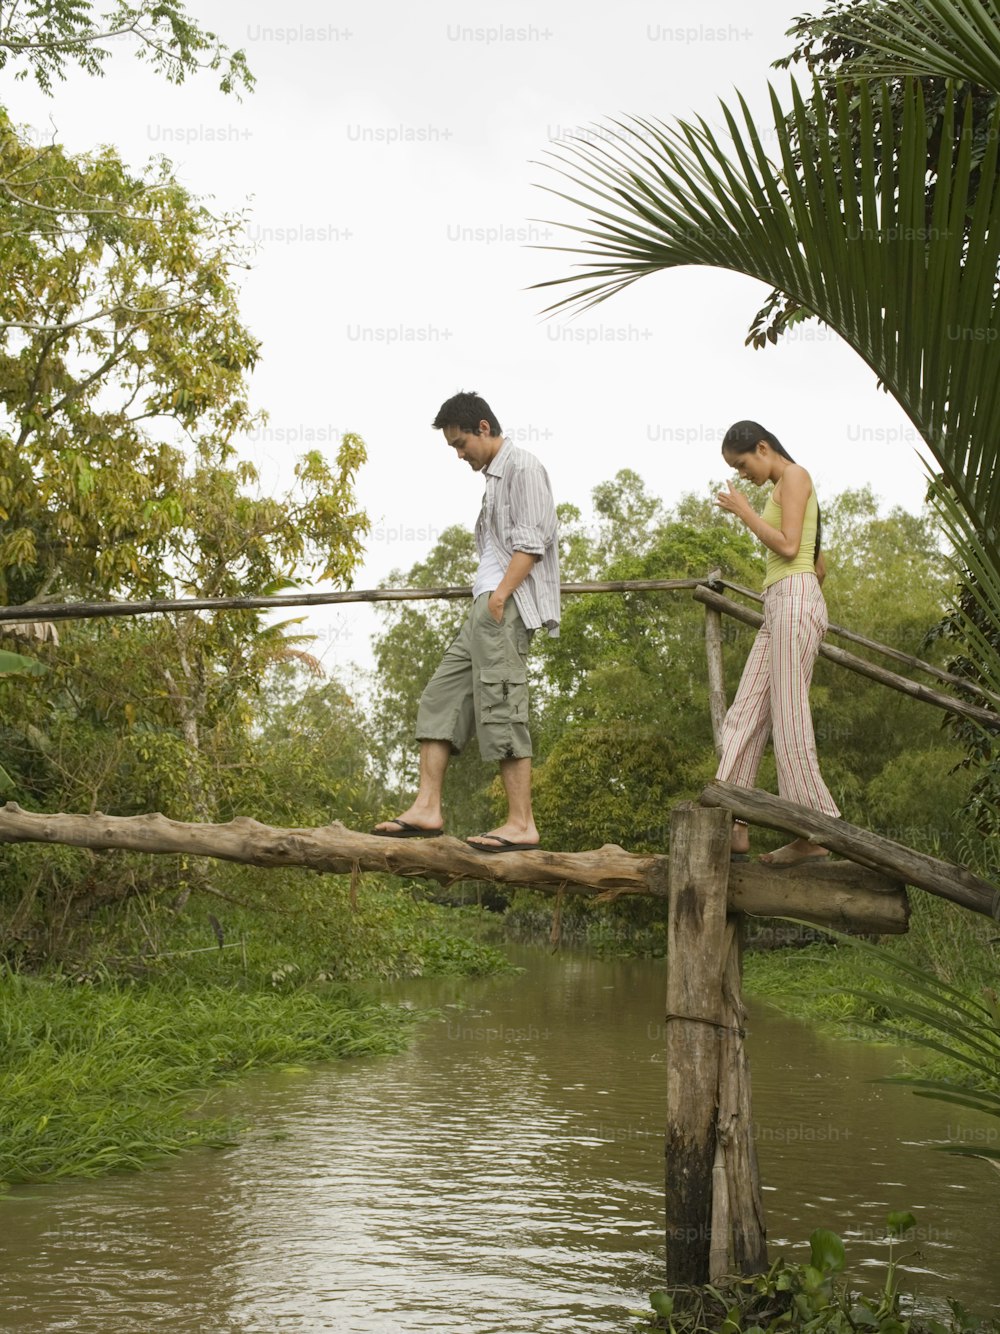 Un hombre y una mujer caminando a través de un puente de madera sobre un río